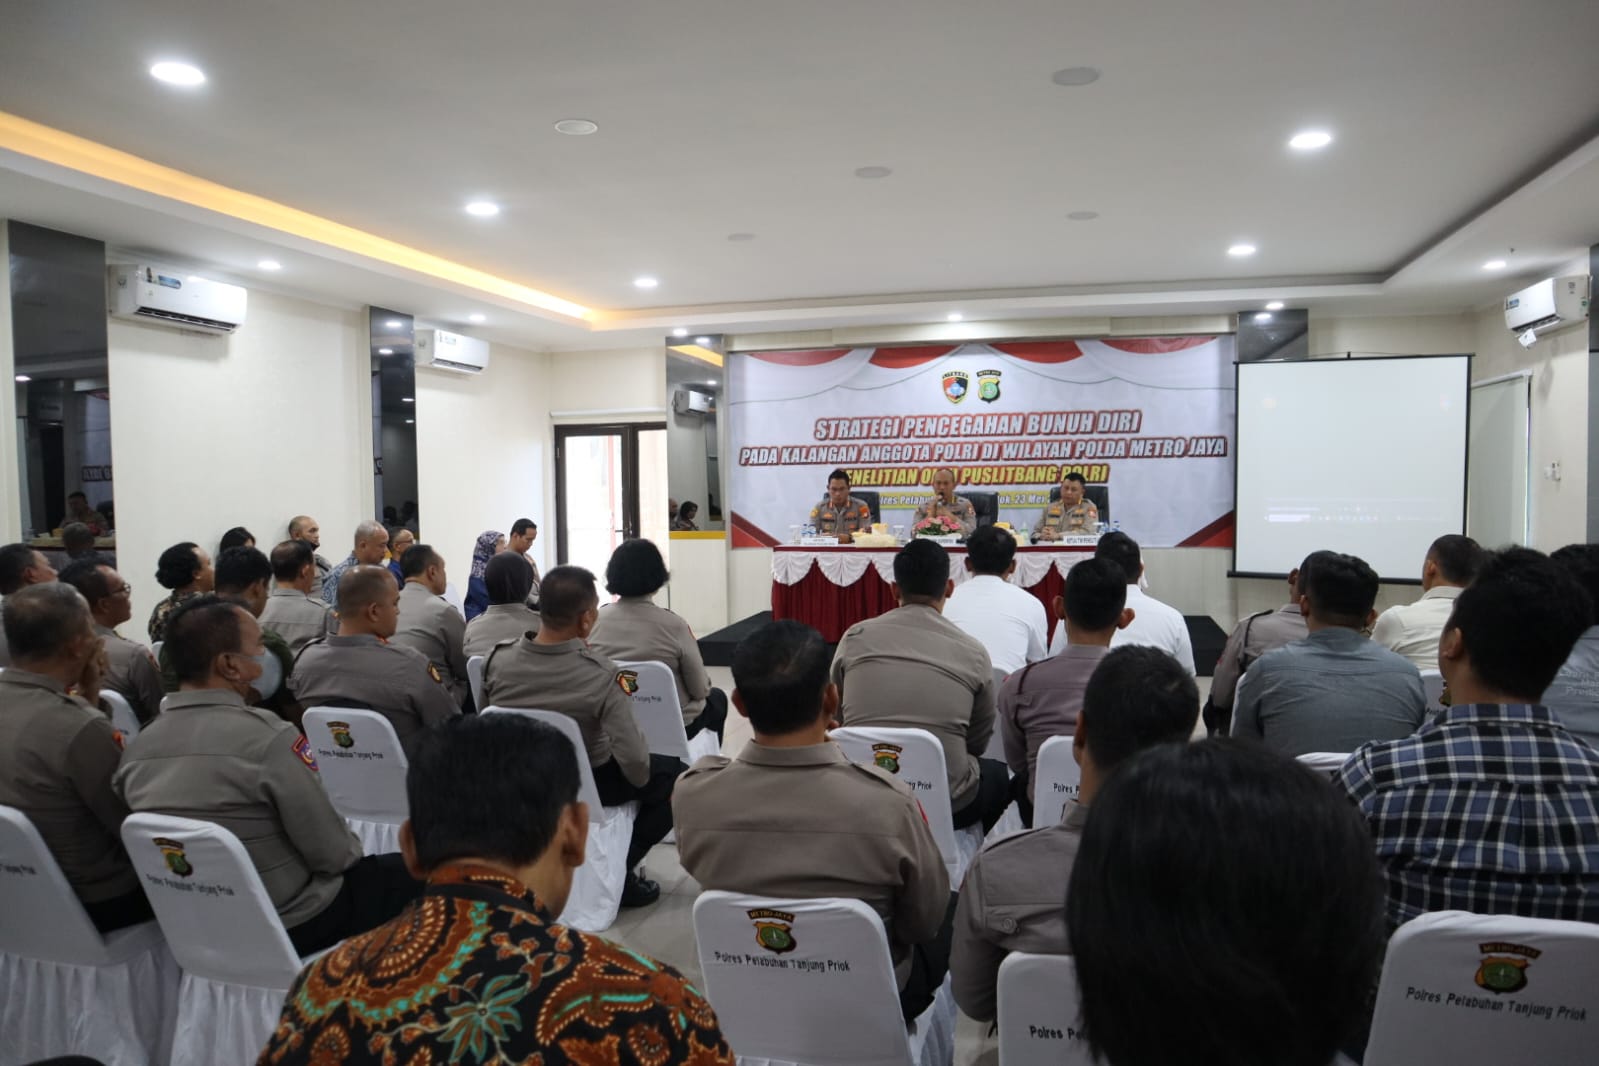 Puslitbang Polri Kunjungi Polres Tanjung Priok Dan Polres Kepulauan Seribu dalam rangka Penelitian Tentang Strategi Pencegahan Bunuh Diri Pada Polri